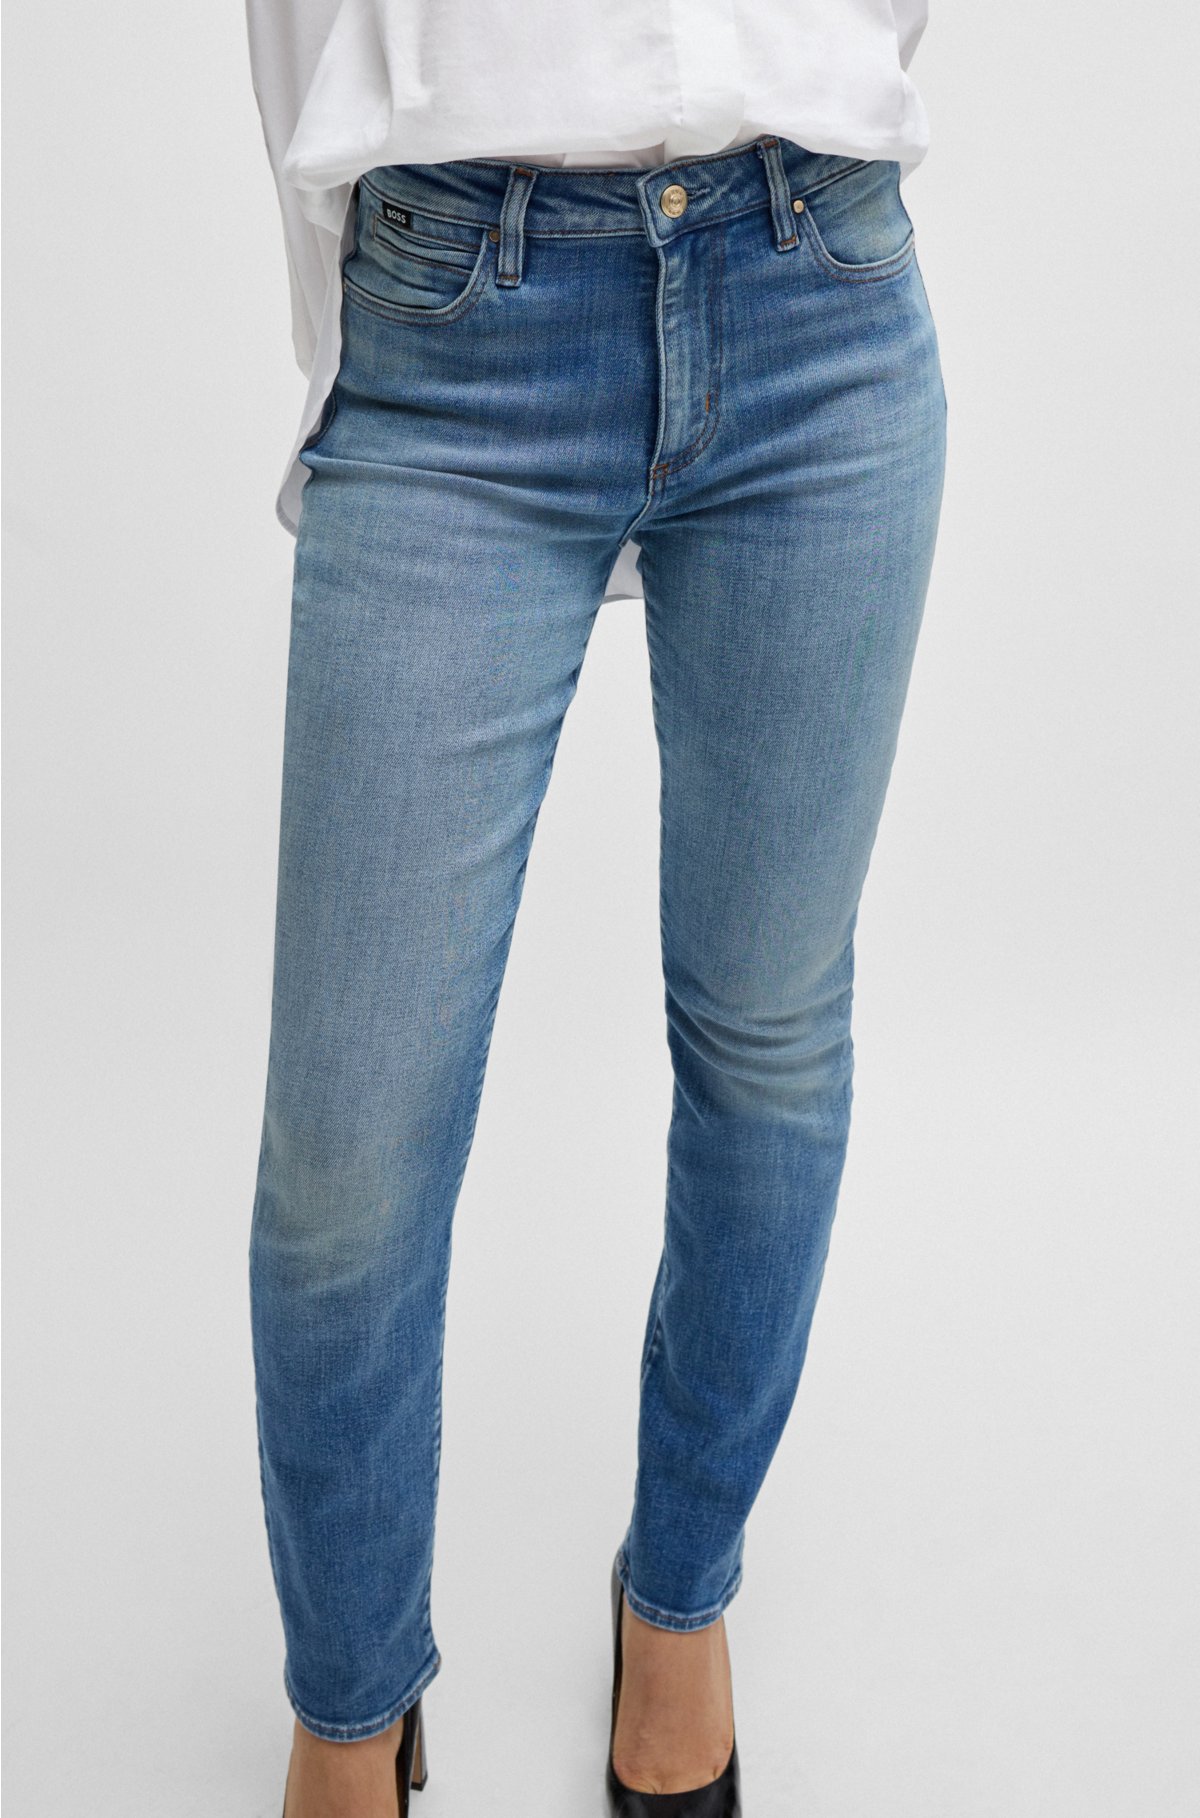 Slim-fit jeans in blue stretch denim, Light Blue